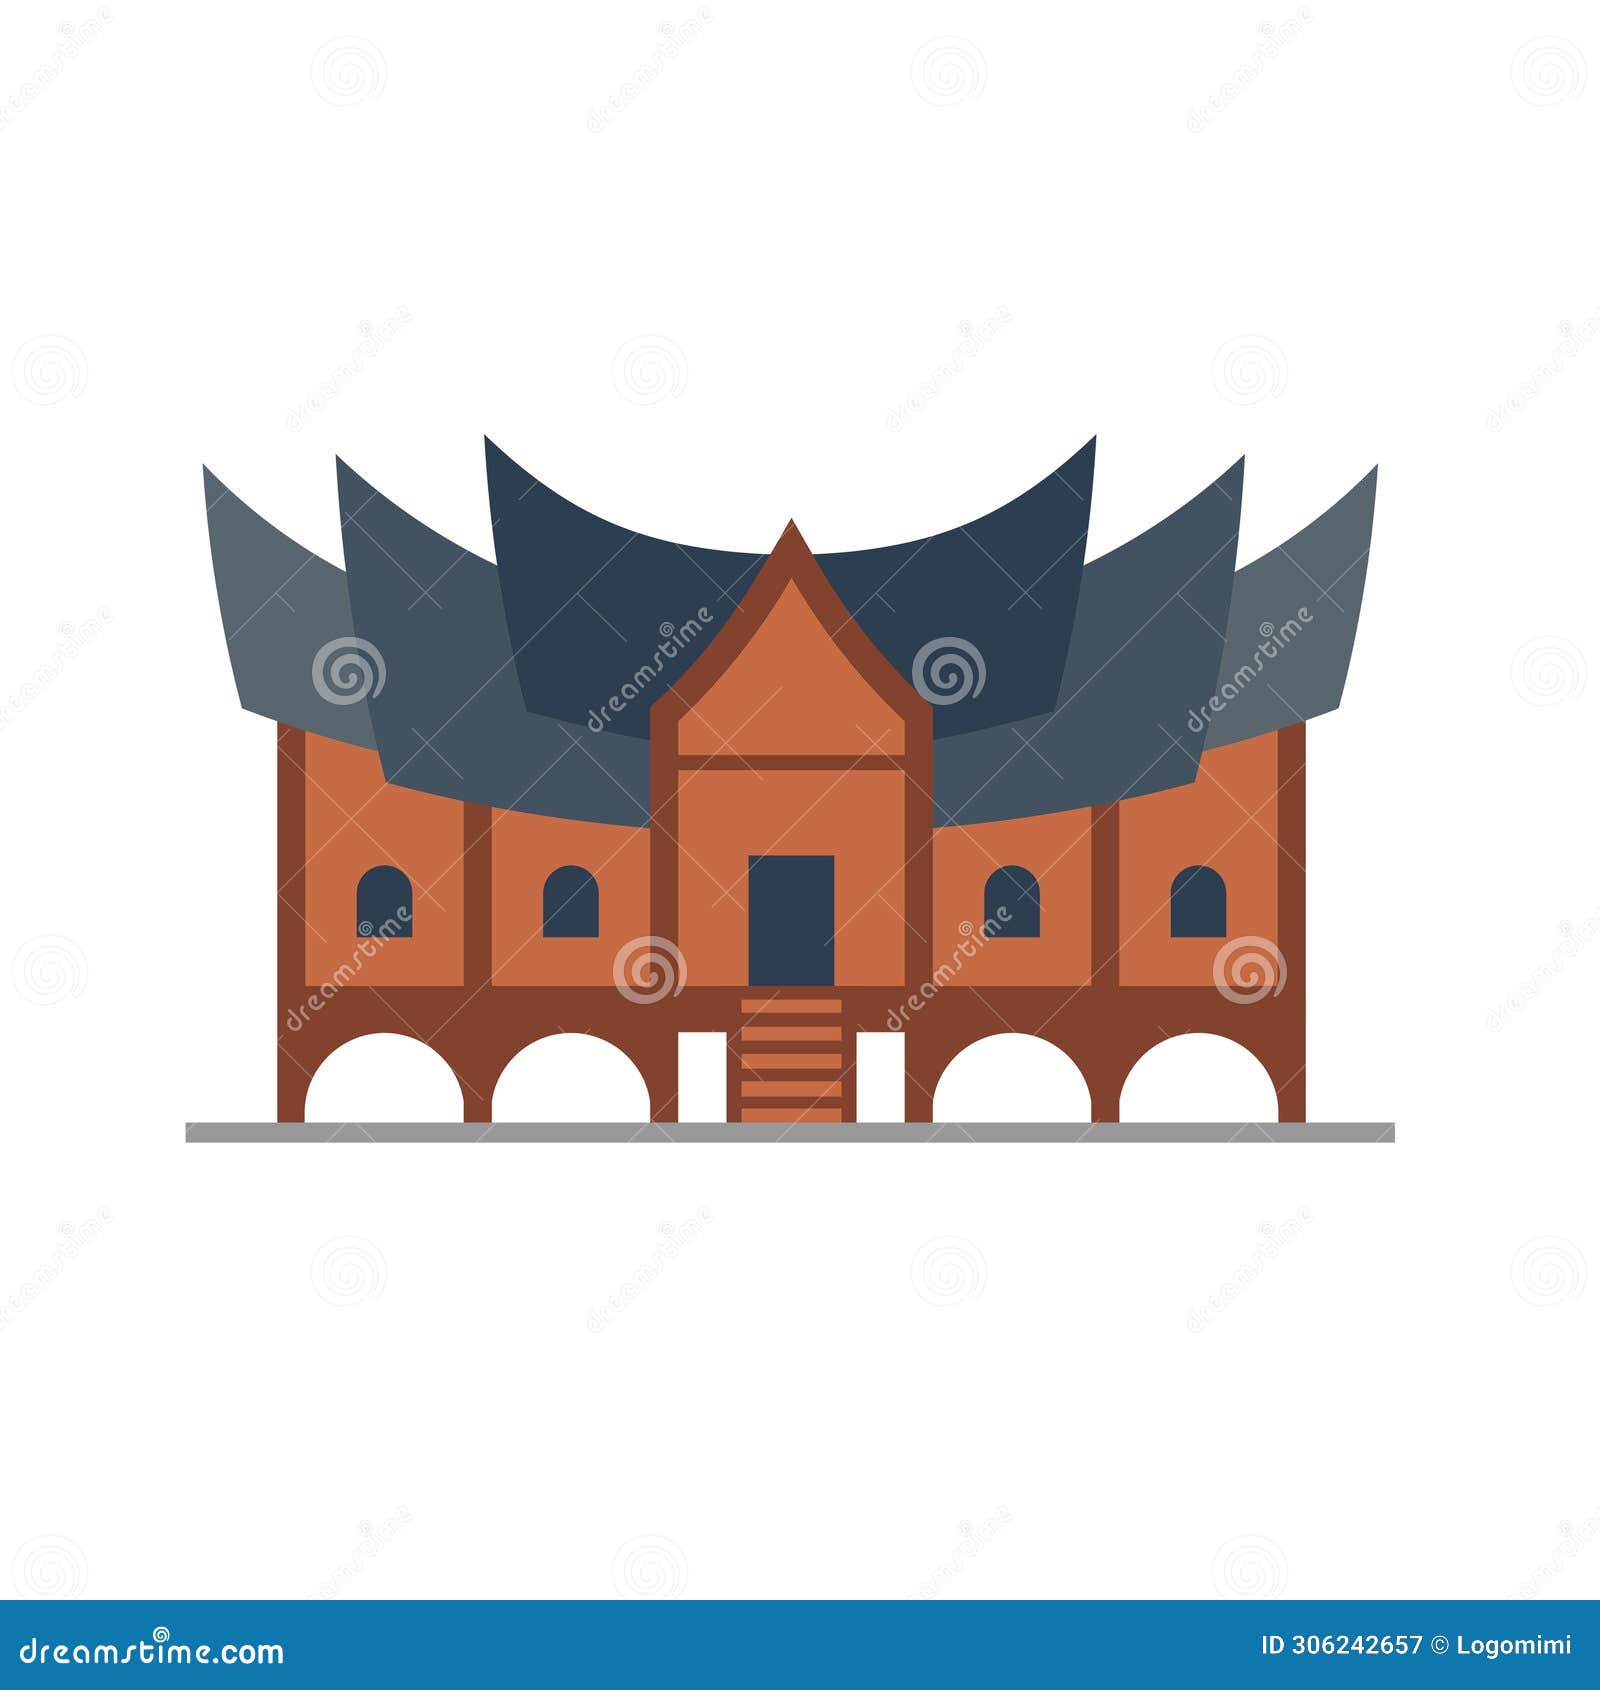 rumah gadang or rumah adat minang, bagonjong or baanjuang house,